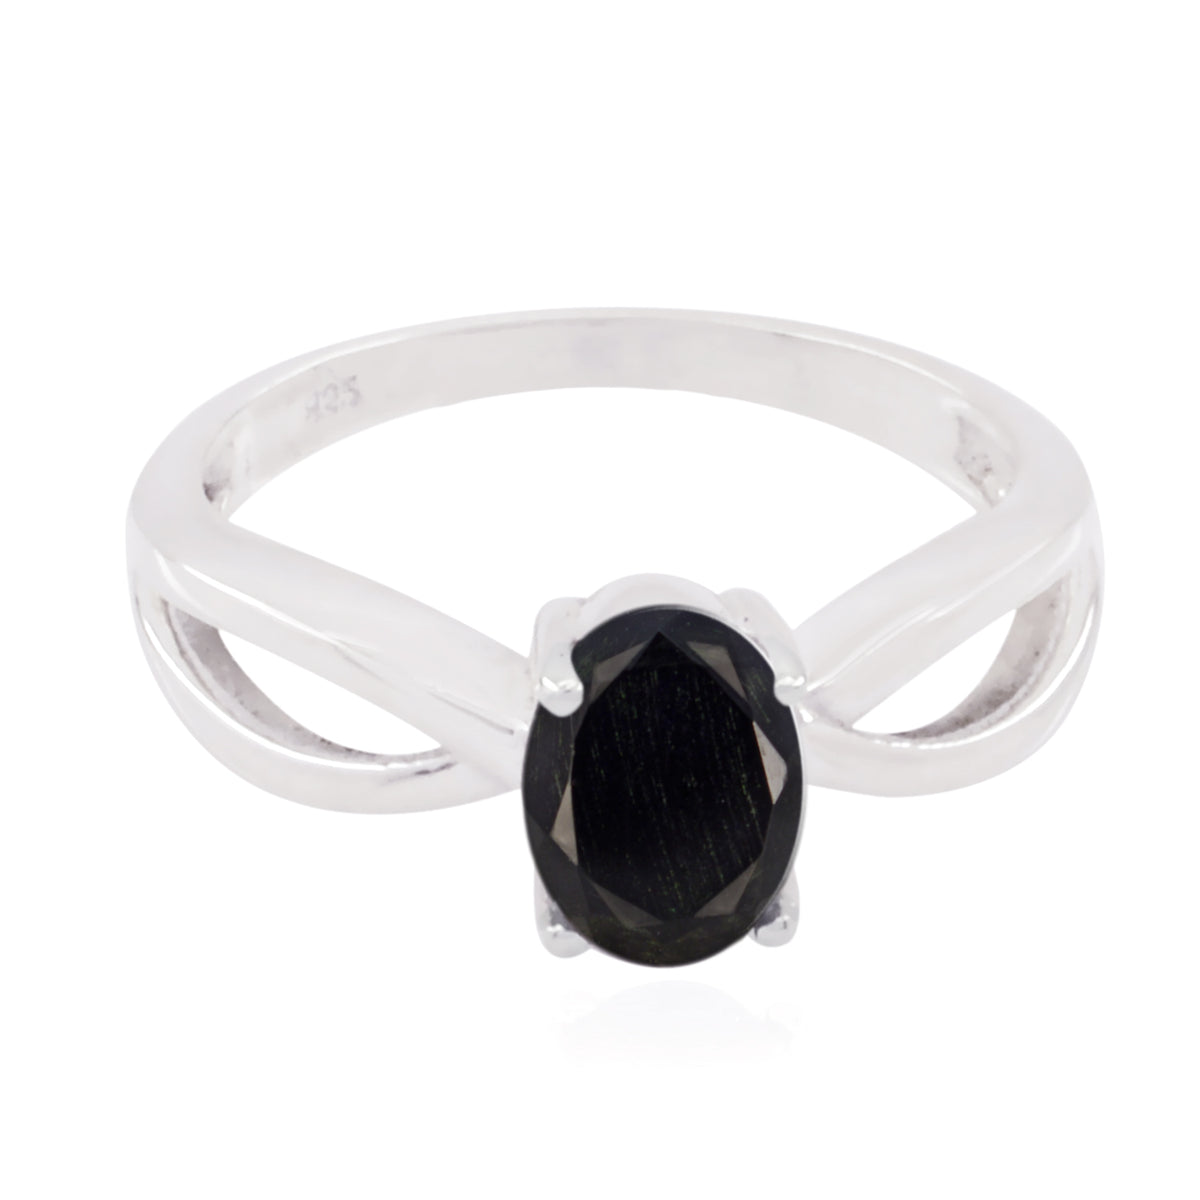 atractivas piedras preciosas ónix negro anillo de plata esterlina 925 decoración del hogar